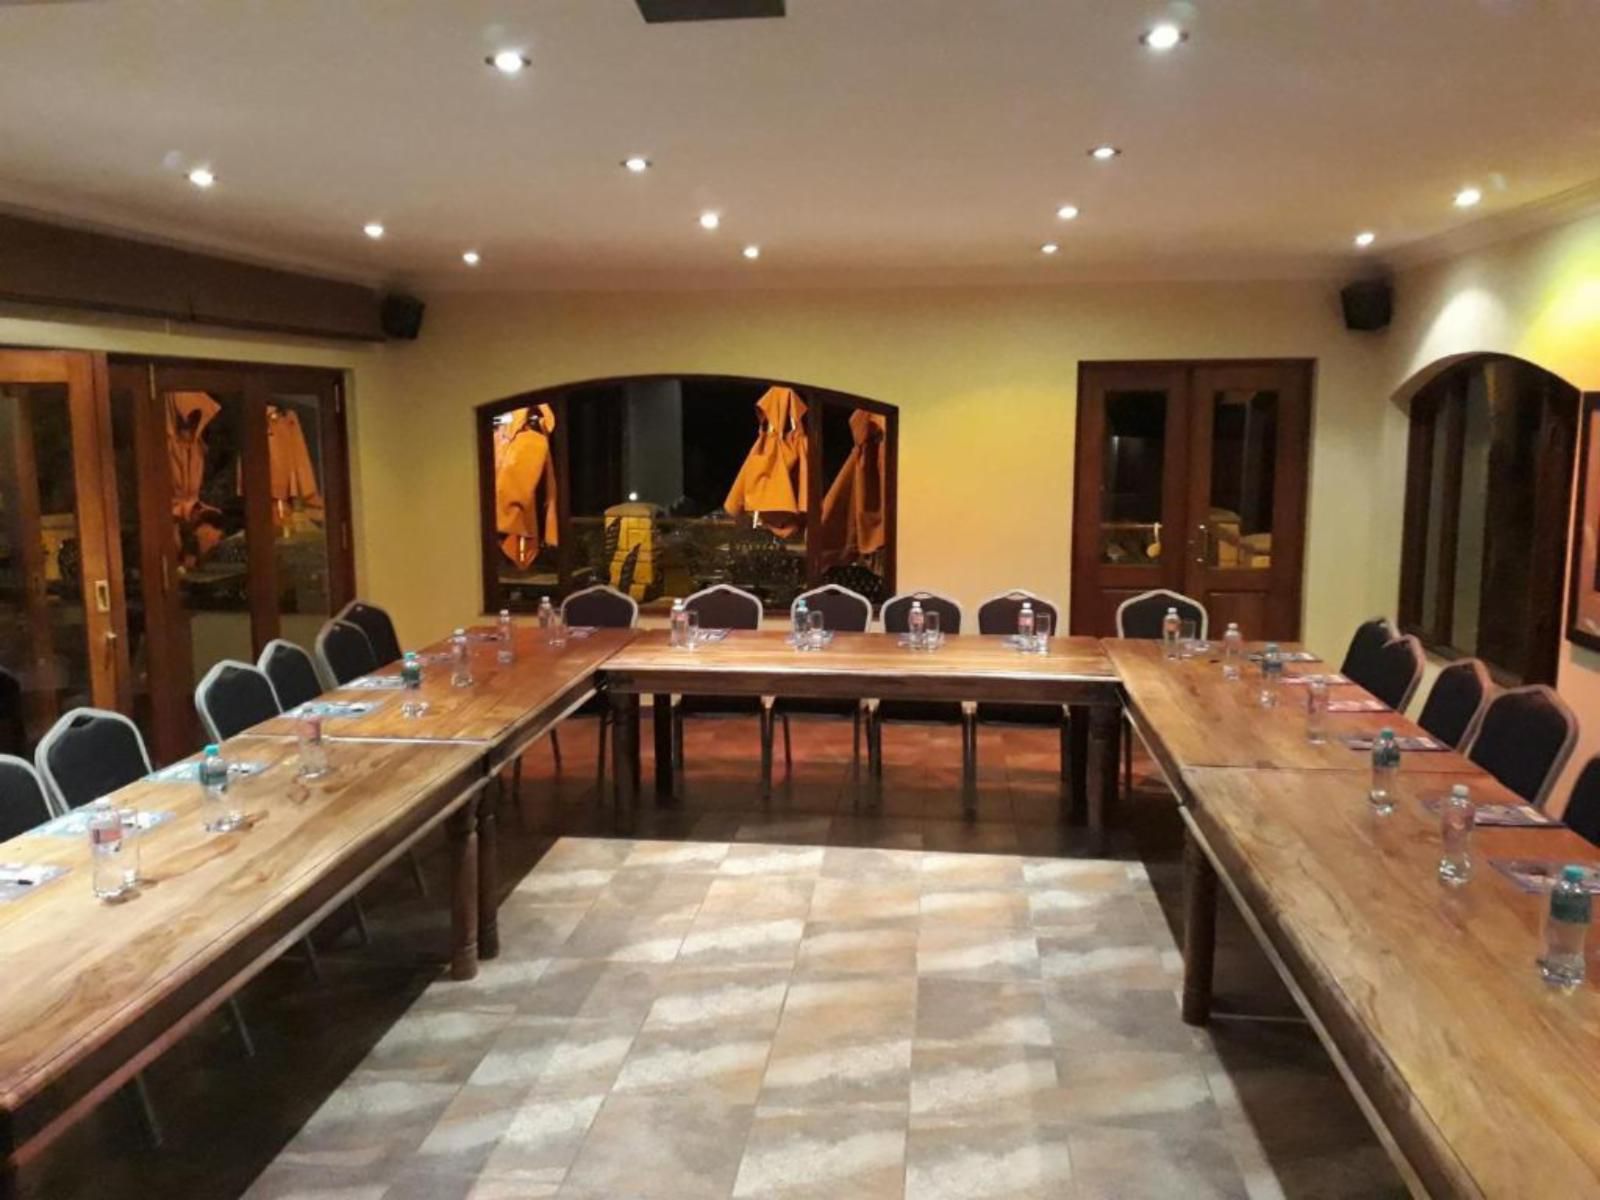 Das Landhaus Guest Lodge Dainfern Johannesburg Gauteng South Africa Seminar Room